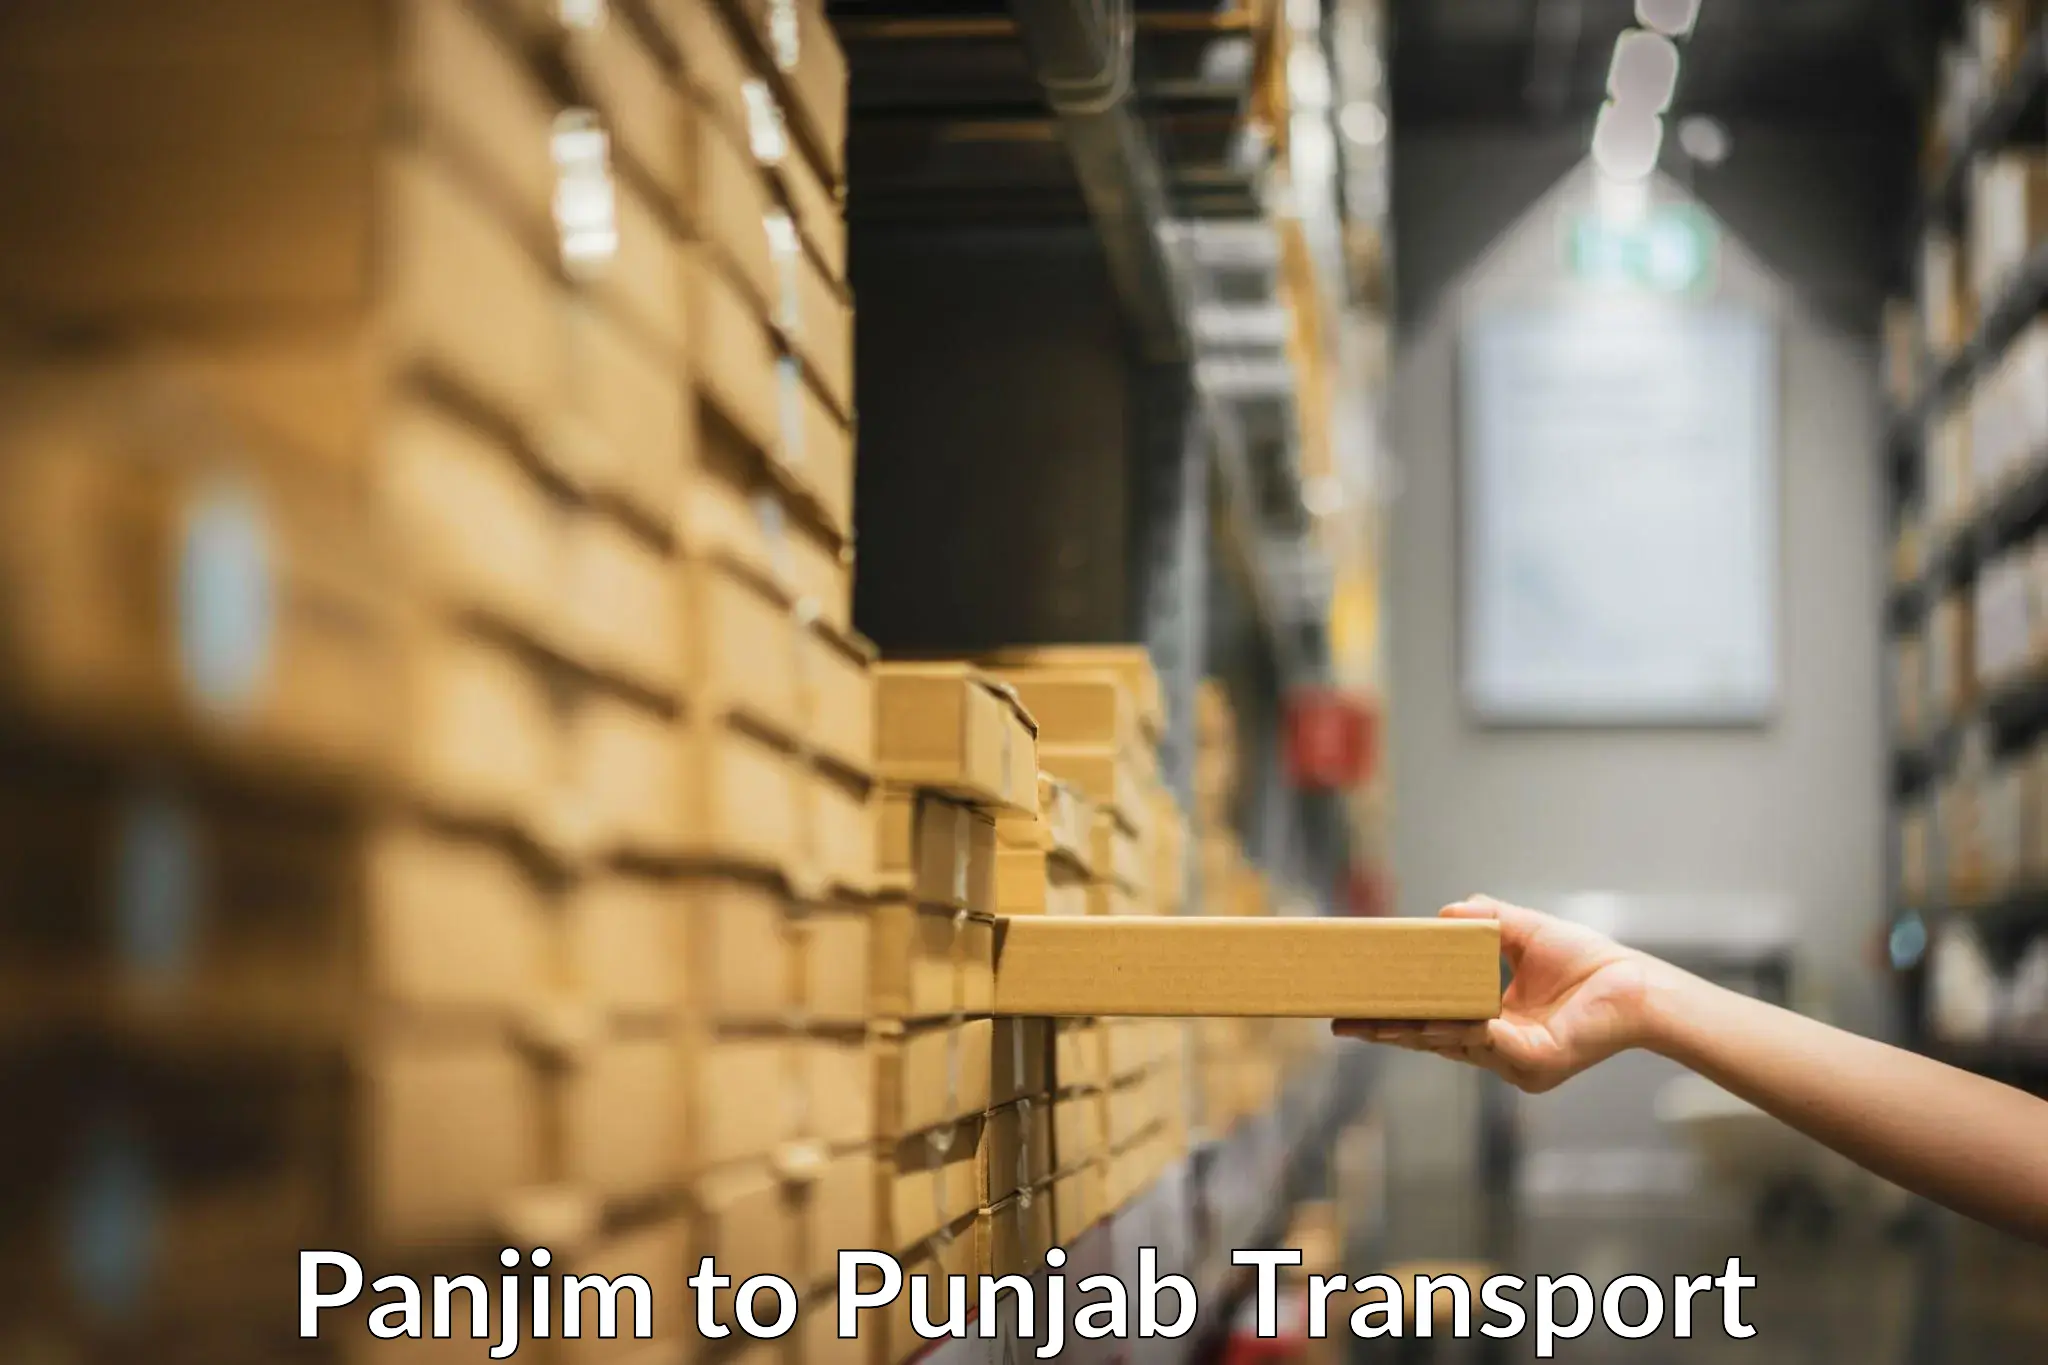 Container transport service Panjim to Anandpur Sahib